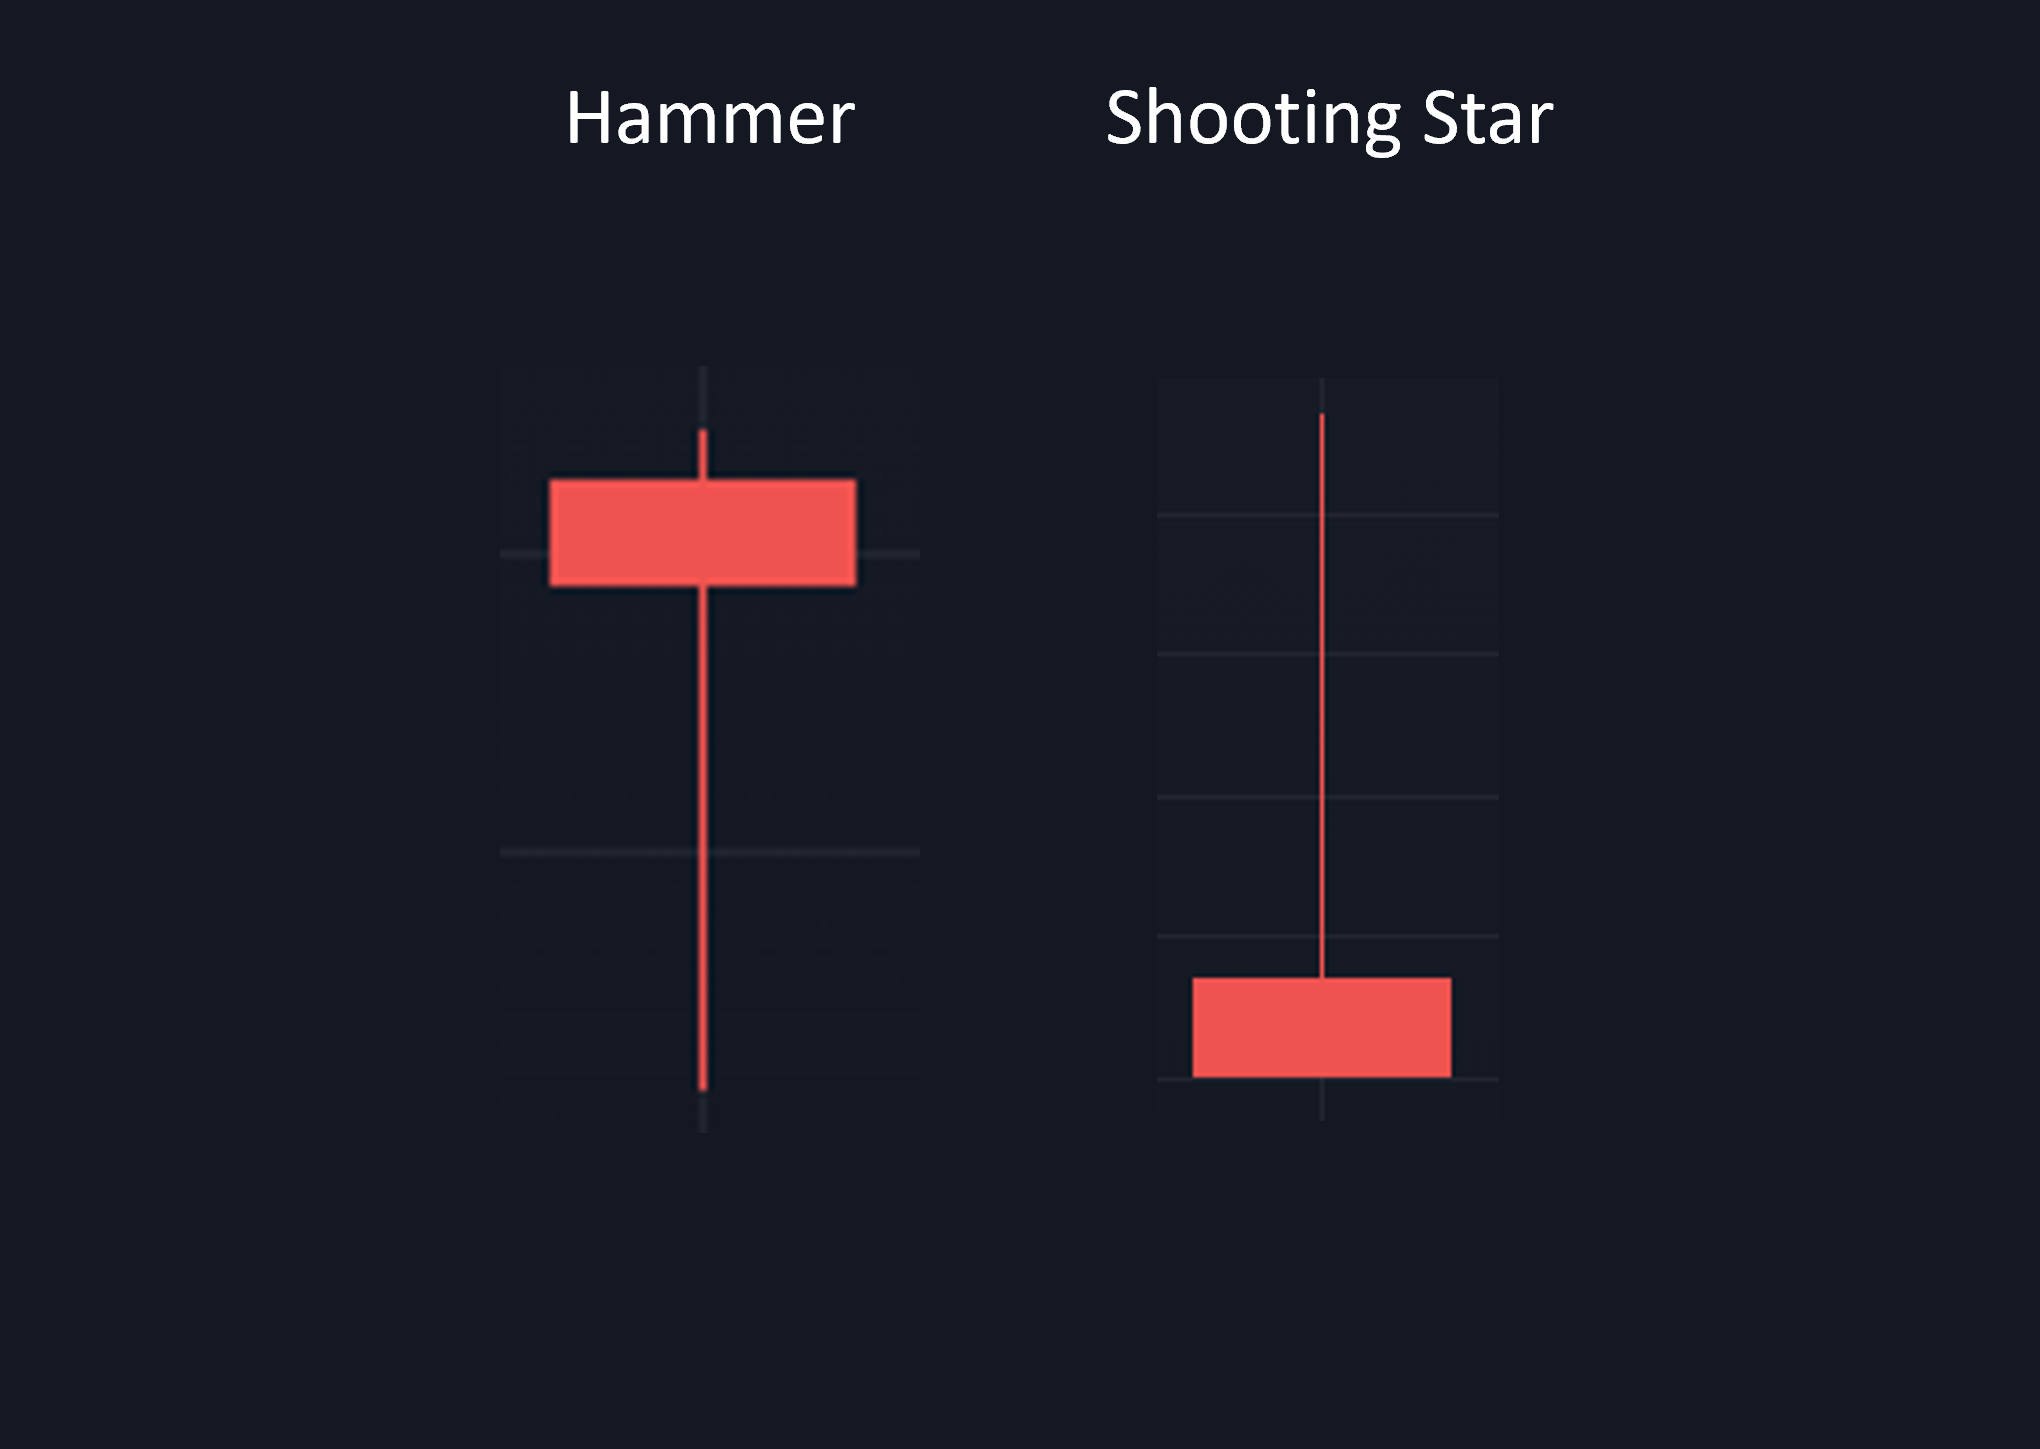 Hammerformation vs. Shooting Star